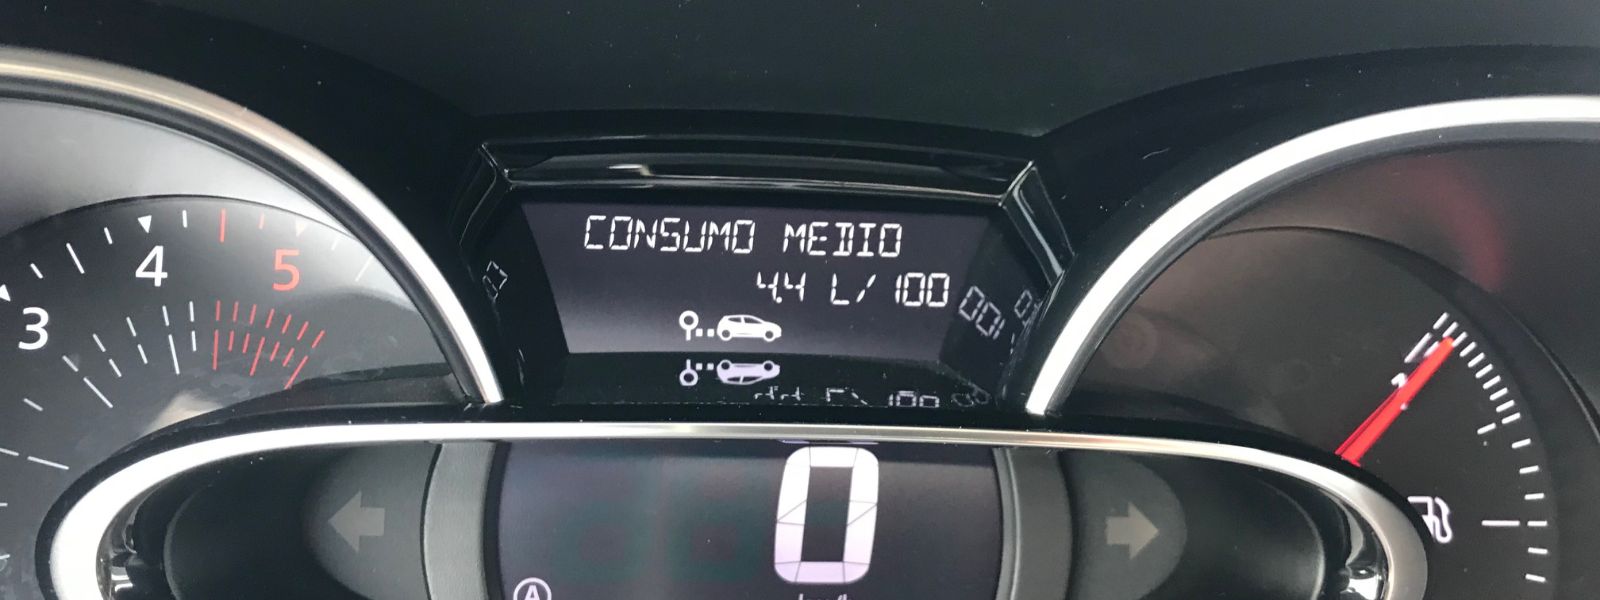 Renault Clio 1.5 dCi: consumi veri